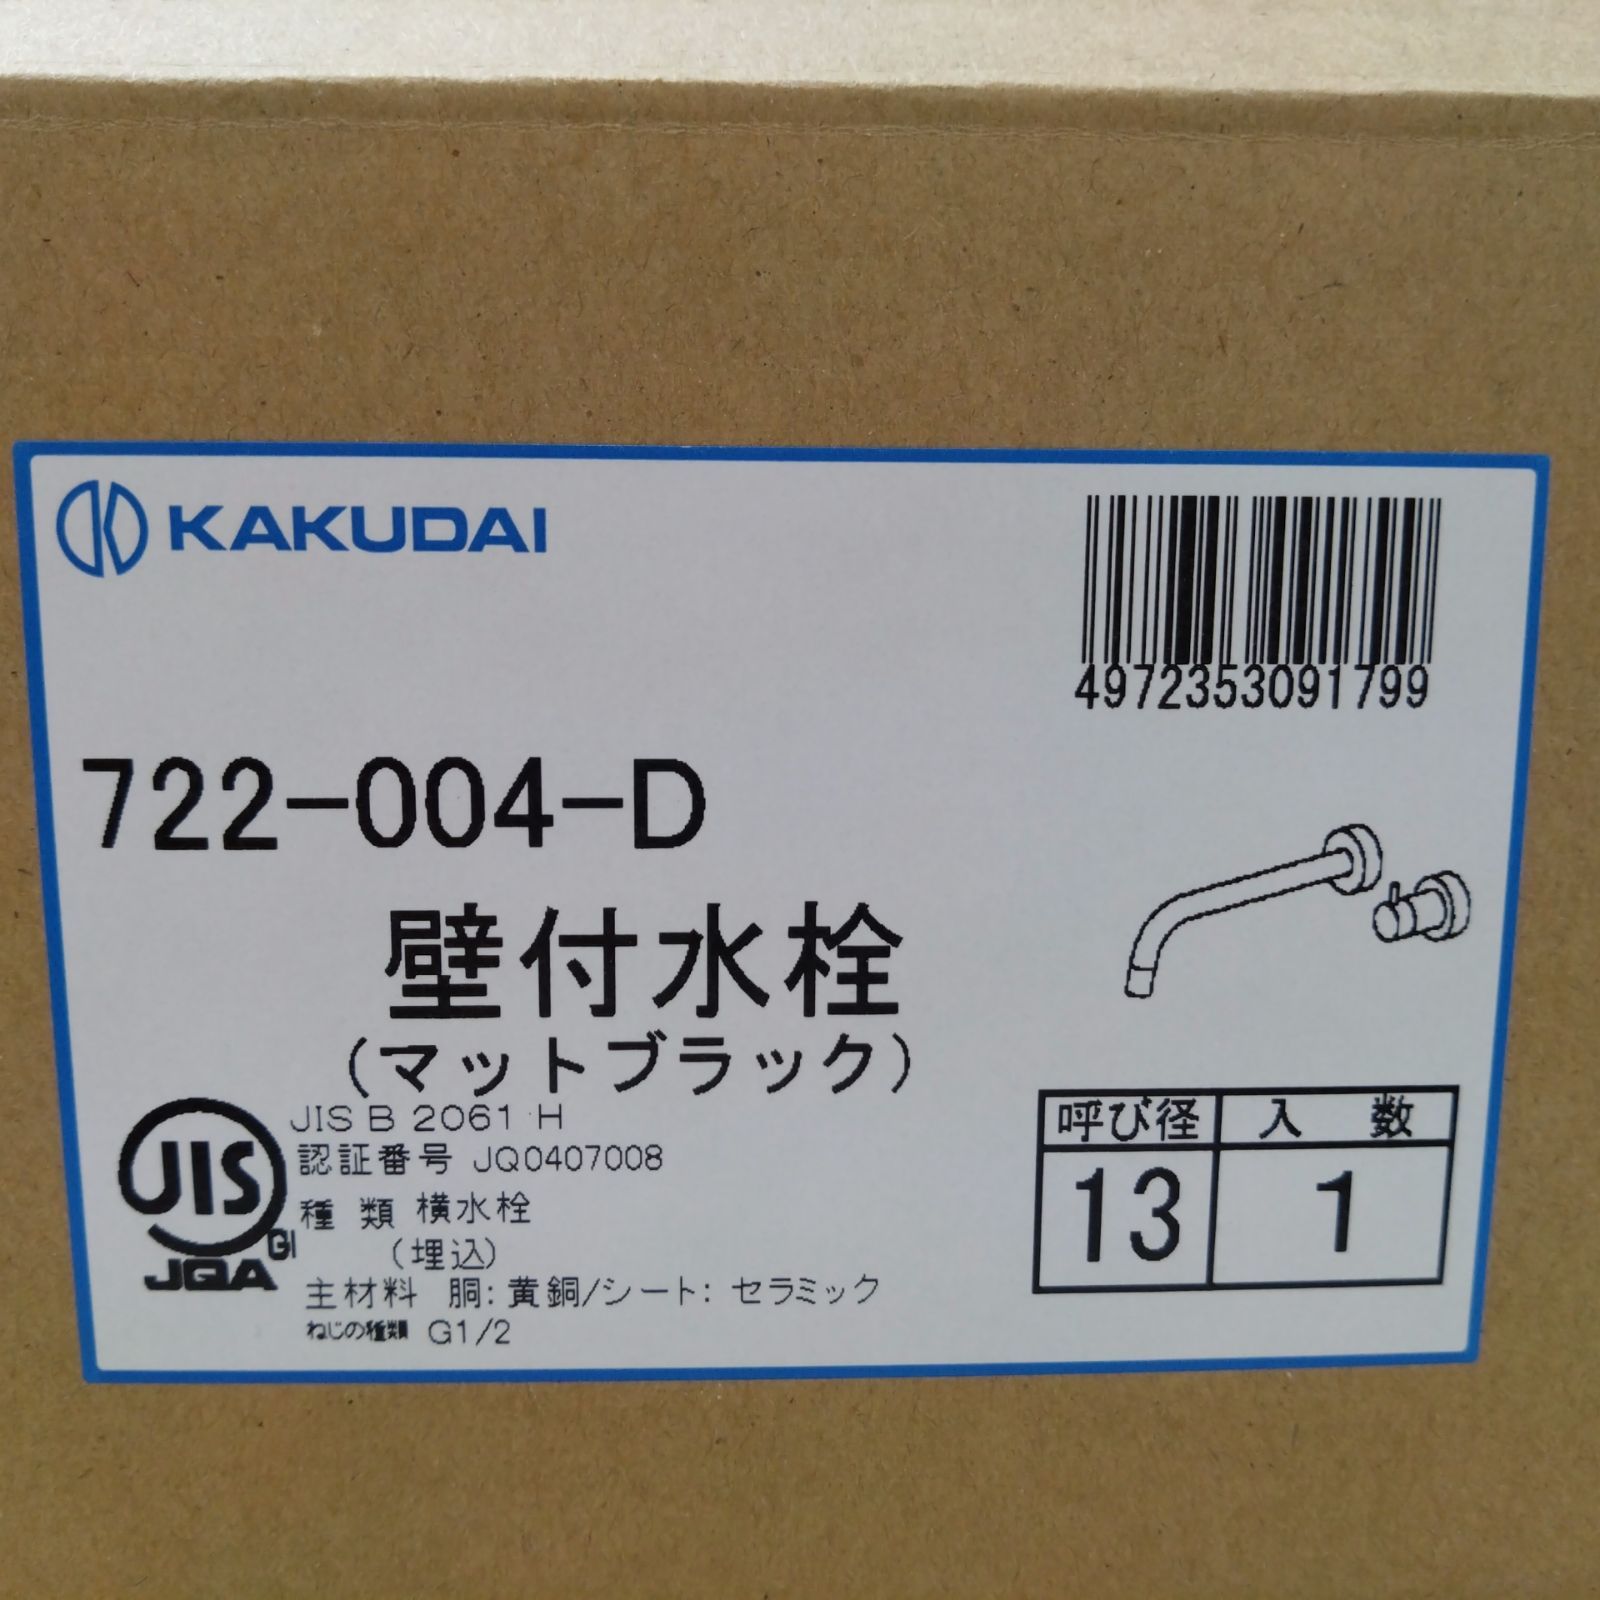 49 【未使用】KAKUDAI カクダイ 722-004-D 壁付水栓 マットブラック お片付け改革 メルカリ